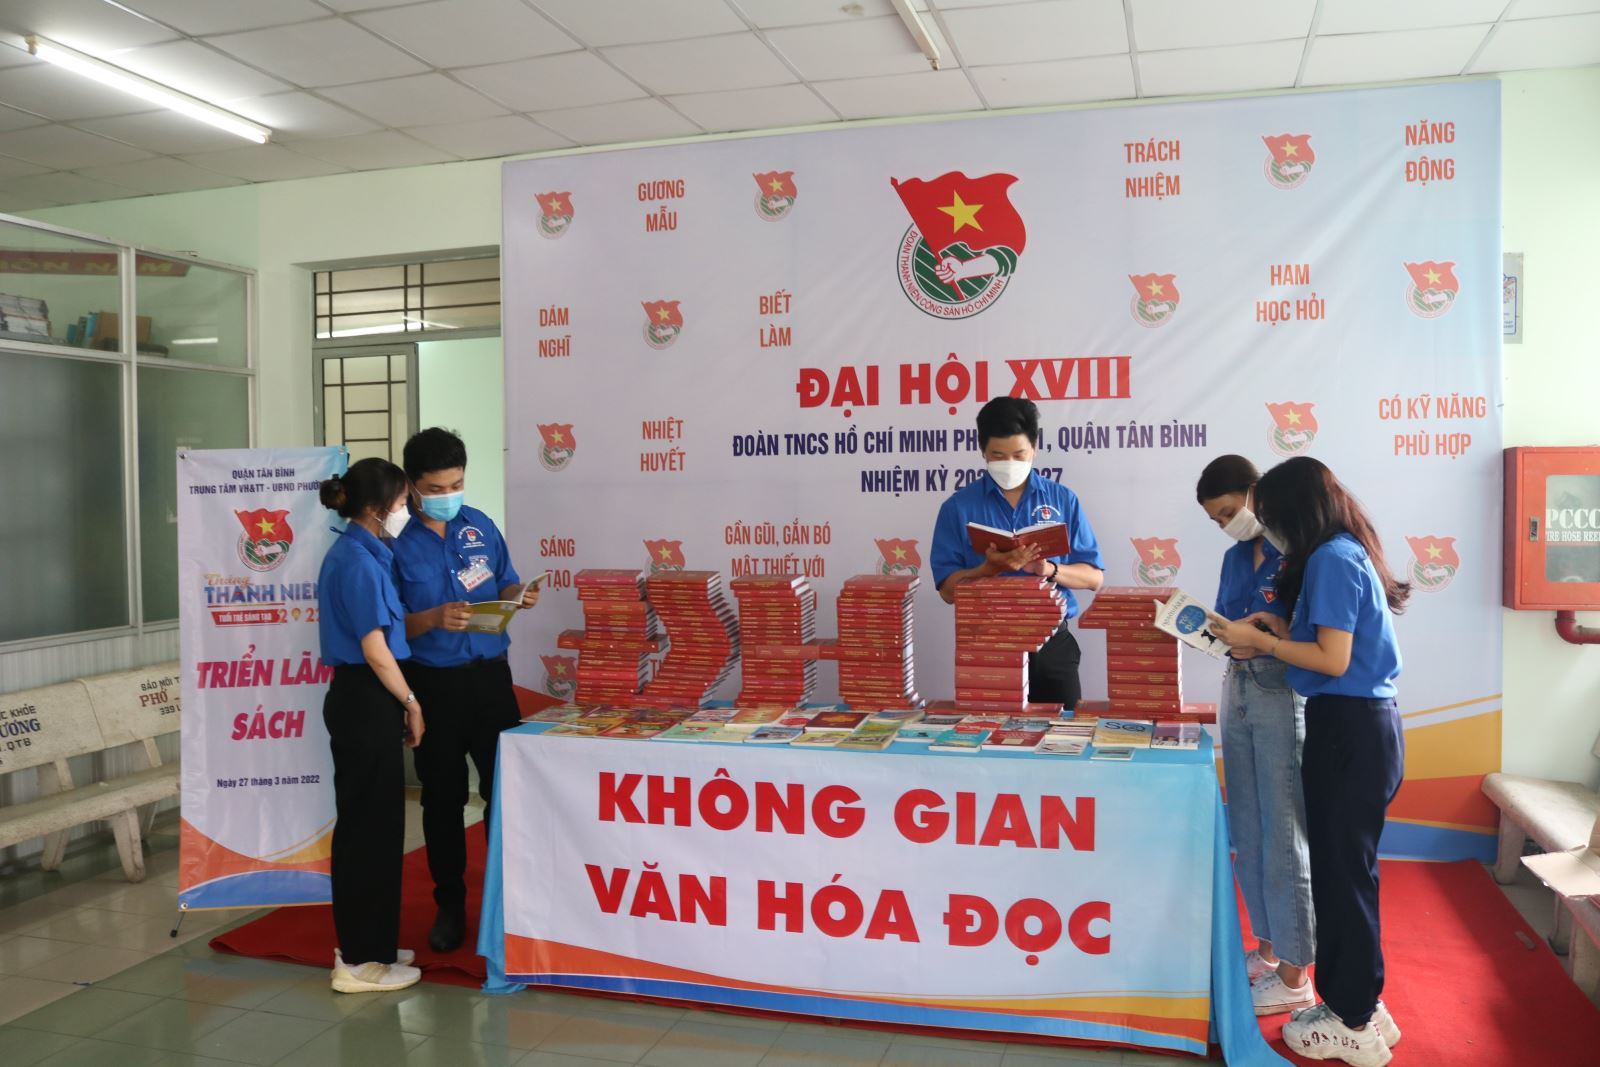 Phường 1 tổ chức triển lãm sách hưởng ứng “Ngày sách và Văn hóa đọc Việt Nam” 